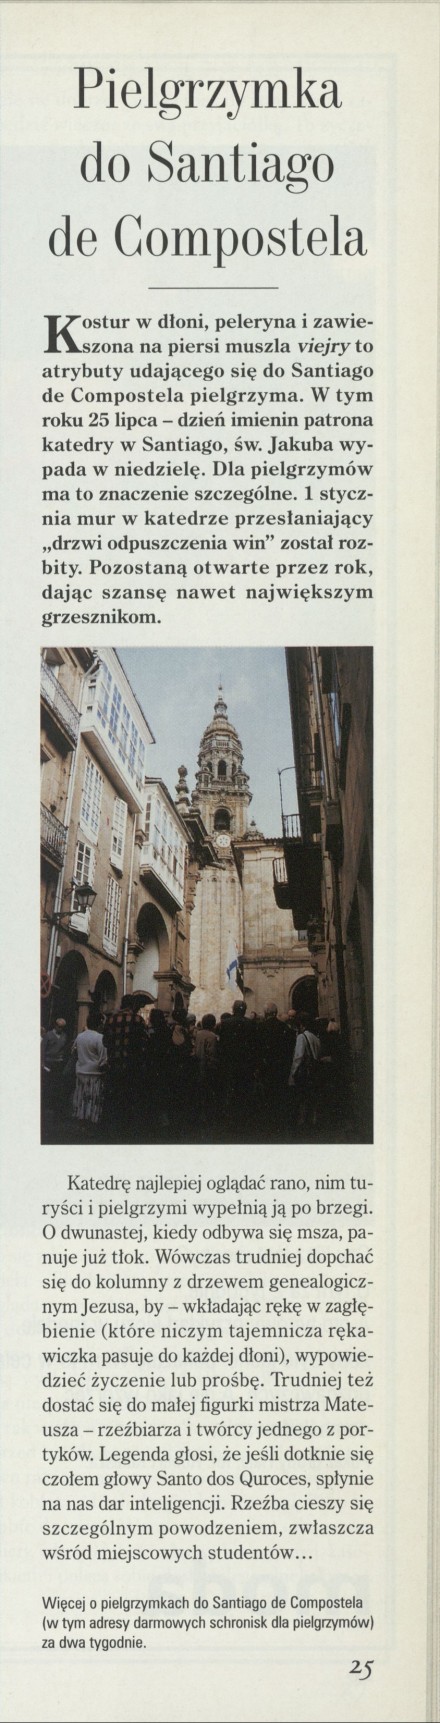 Pielgrzymka do Santiago de Compostela